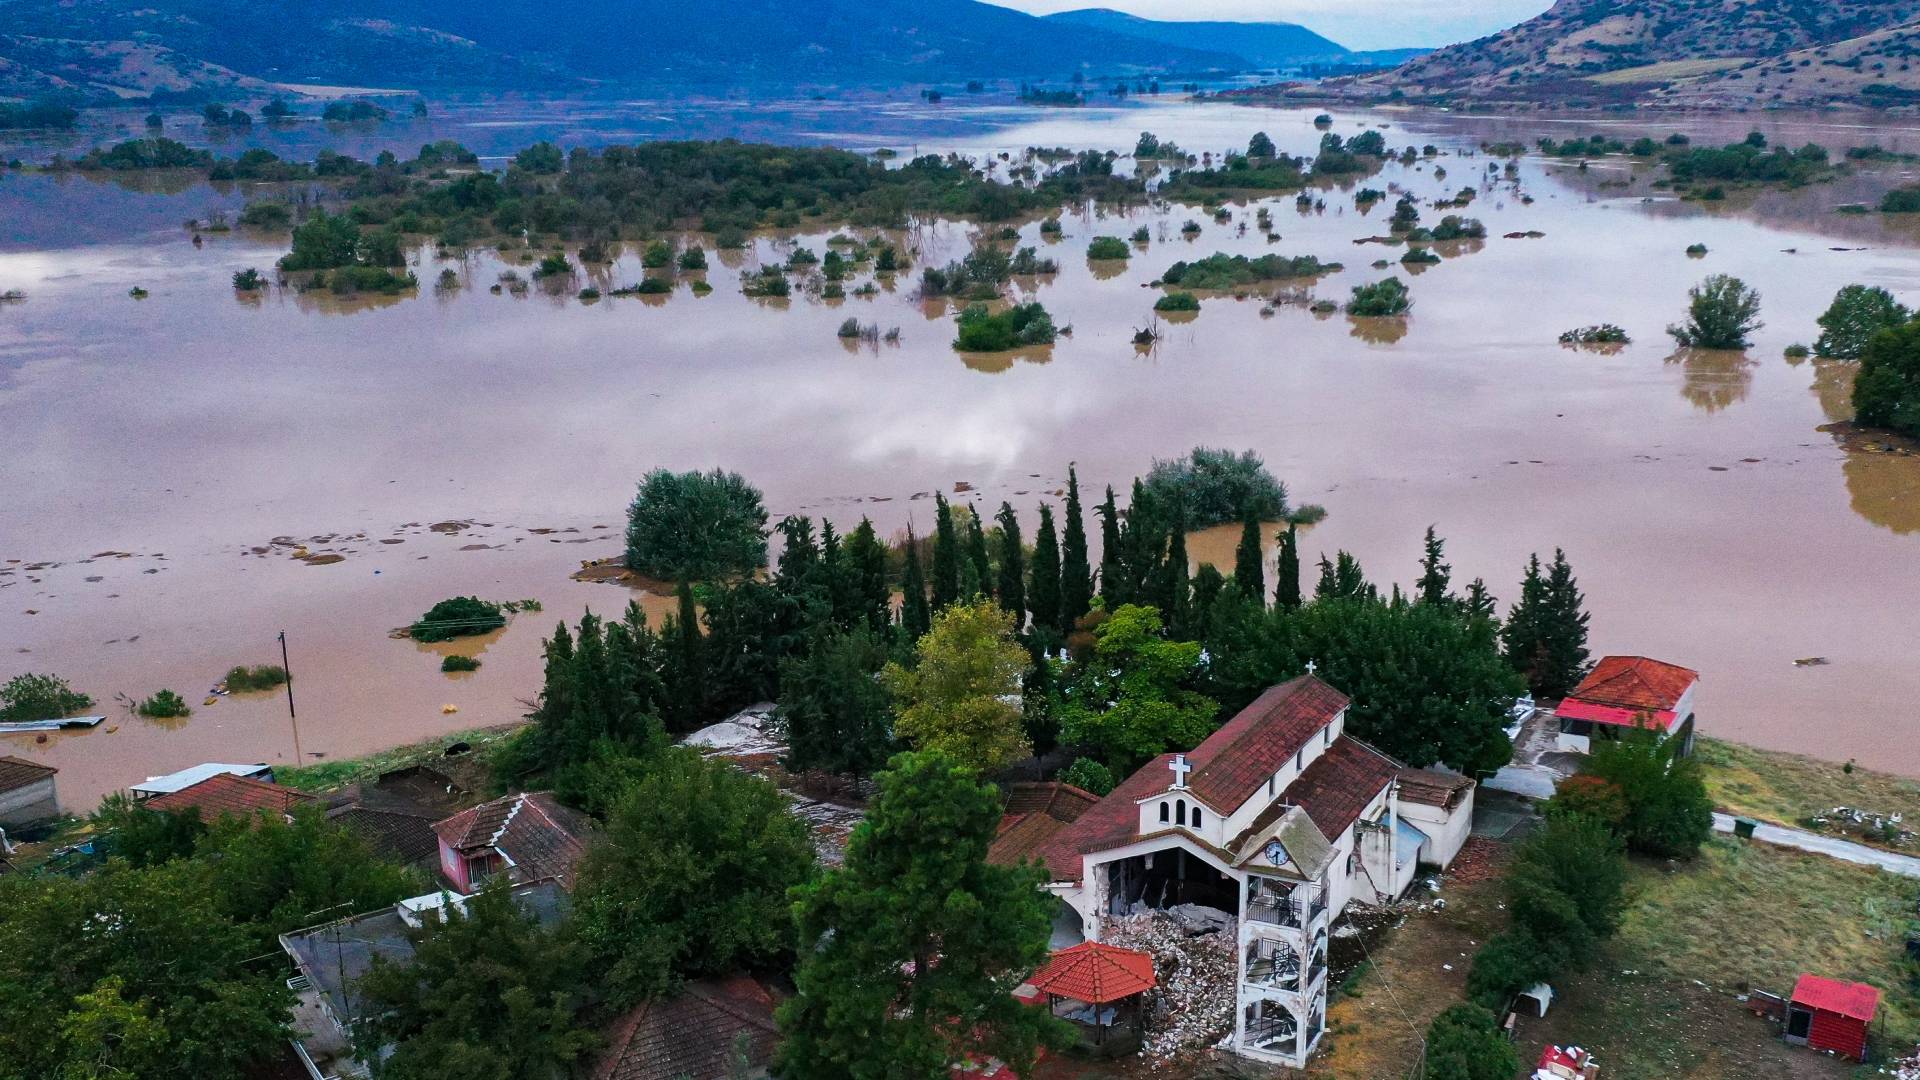 Απόψεις - Παραμένει ανοχύρωτος ο Θεσσαλικός κάμπος σε πλημμύρες και ξηρασία